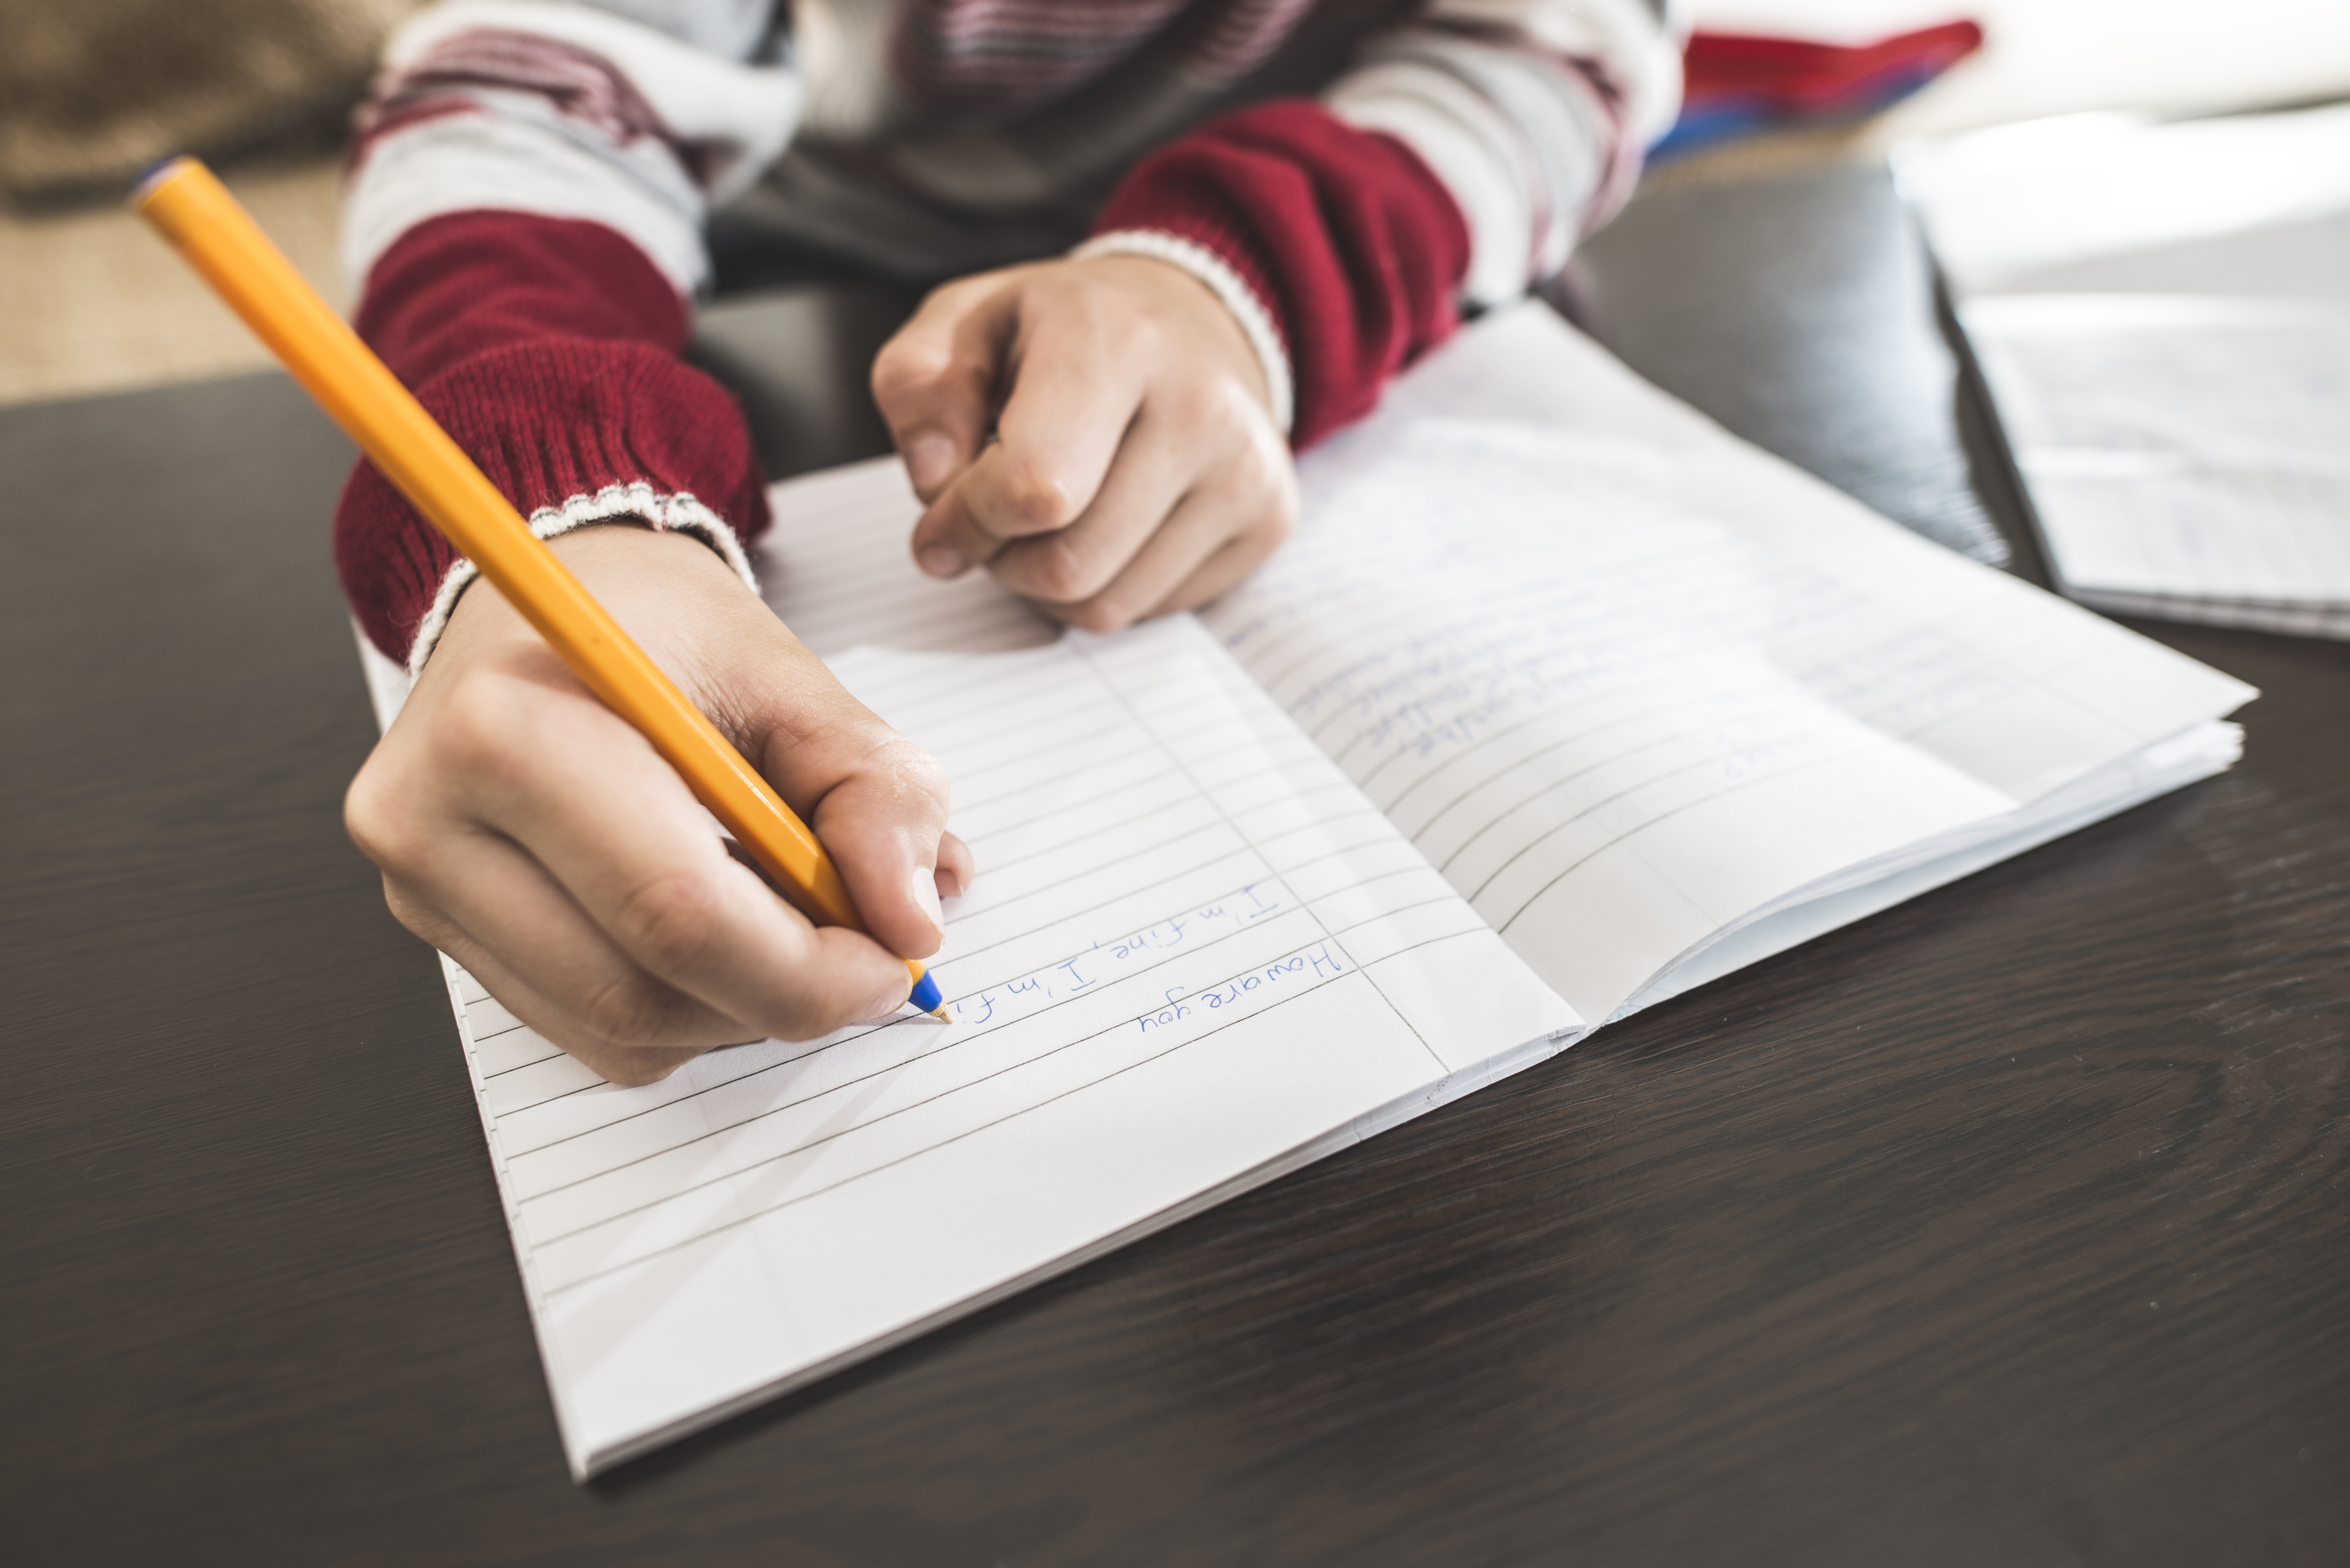 10 Fun Writing Activities for Kids to Improve Handwriting Skills